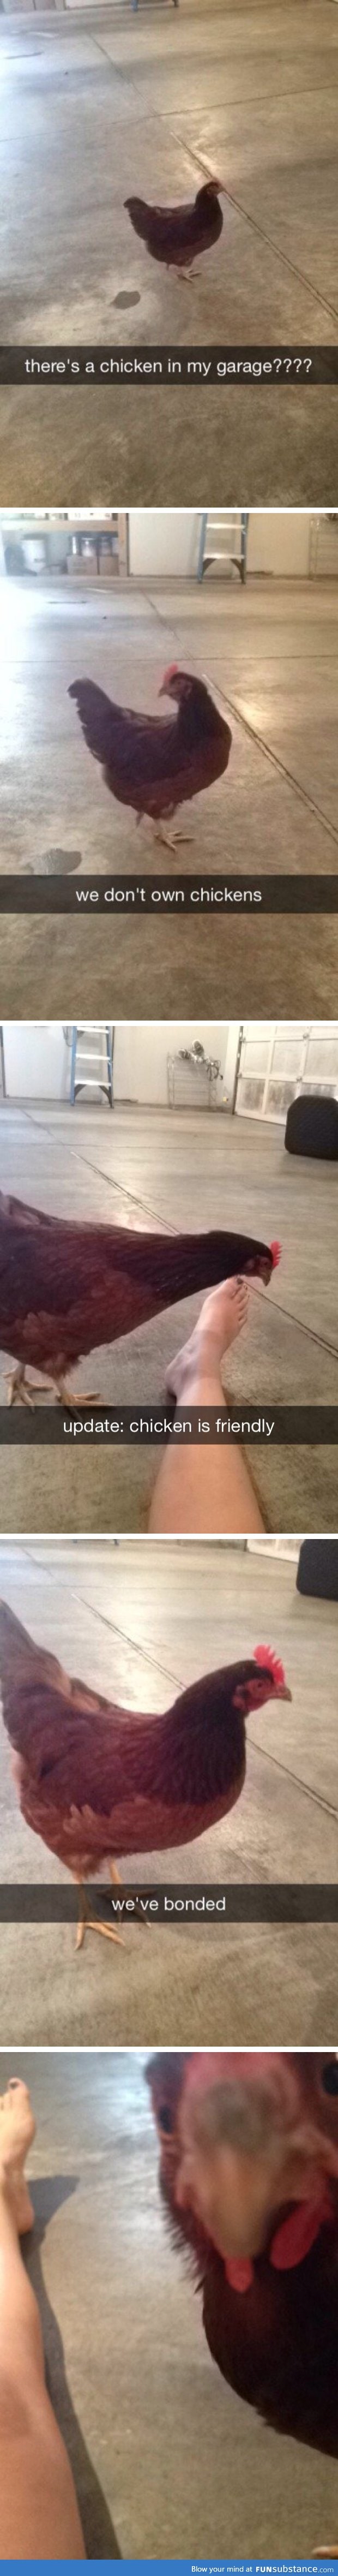 Chicken alert